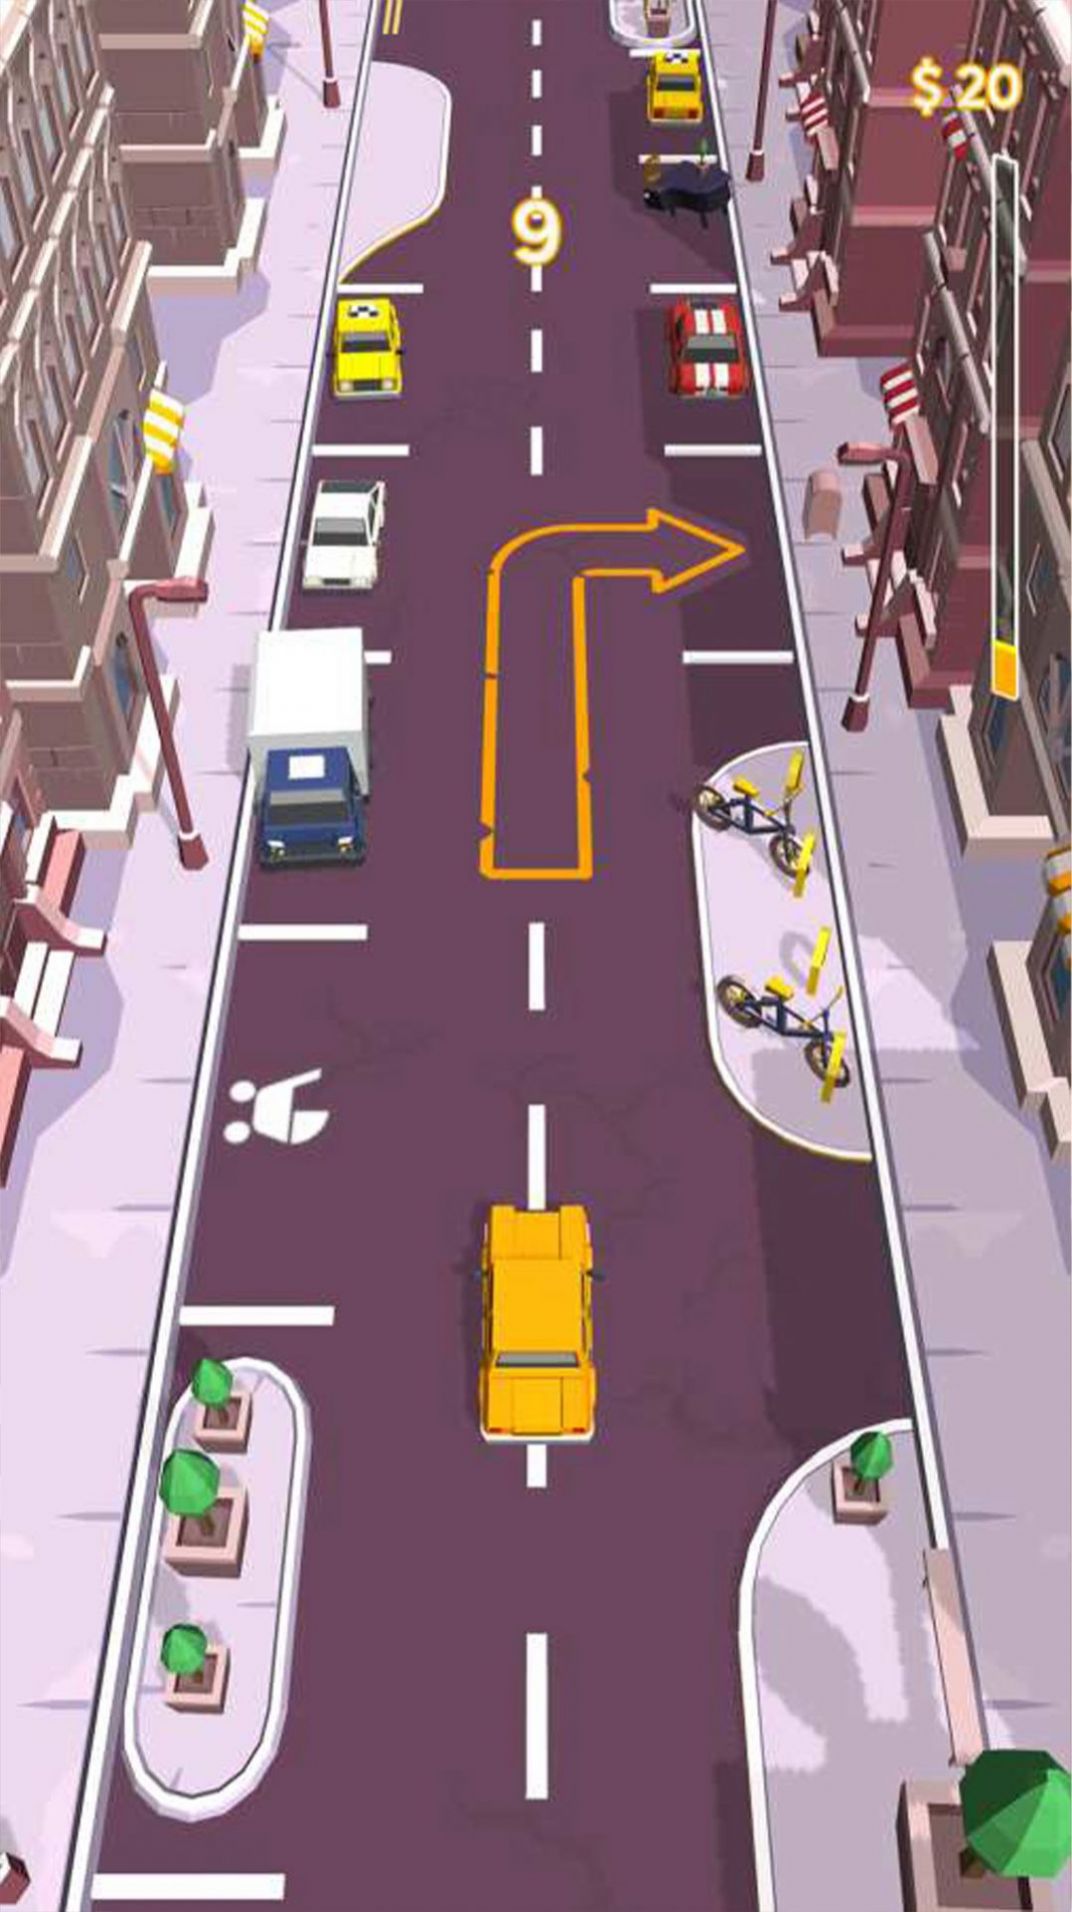 模拟城市路况驾驶游戏安卓版